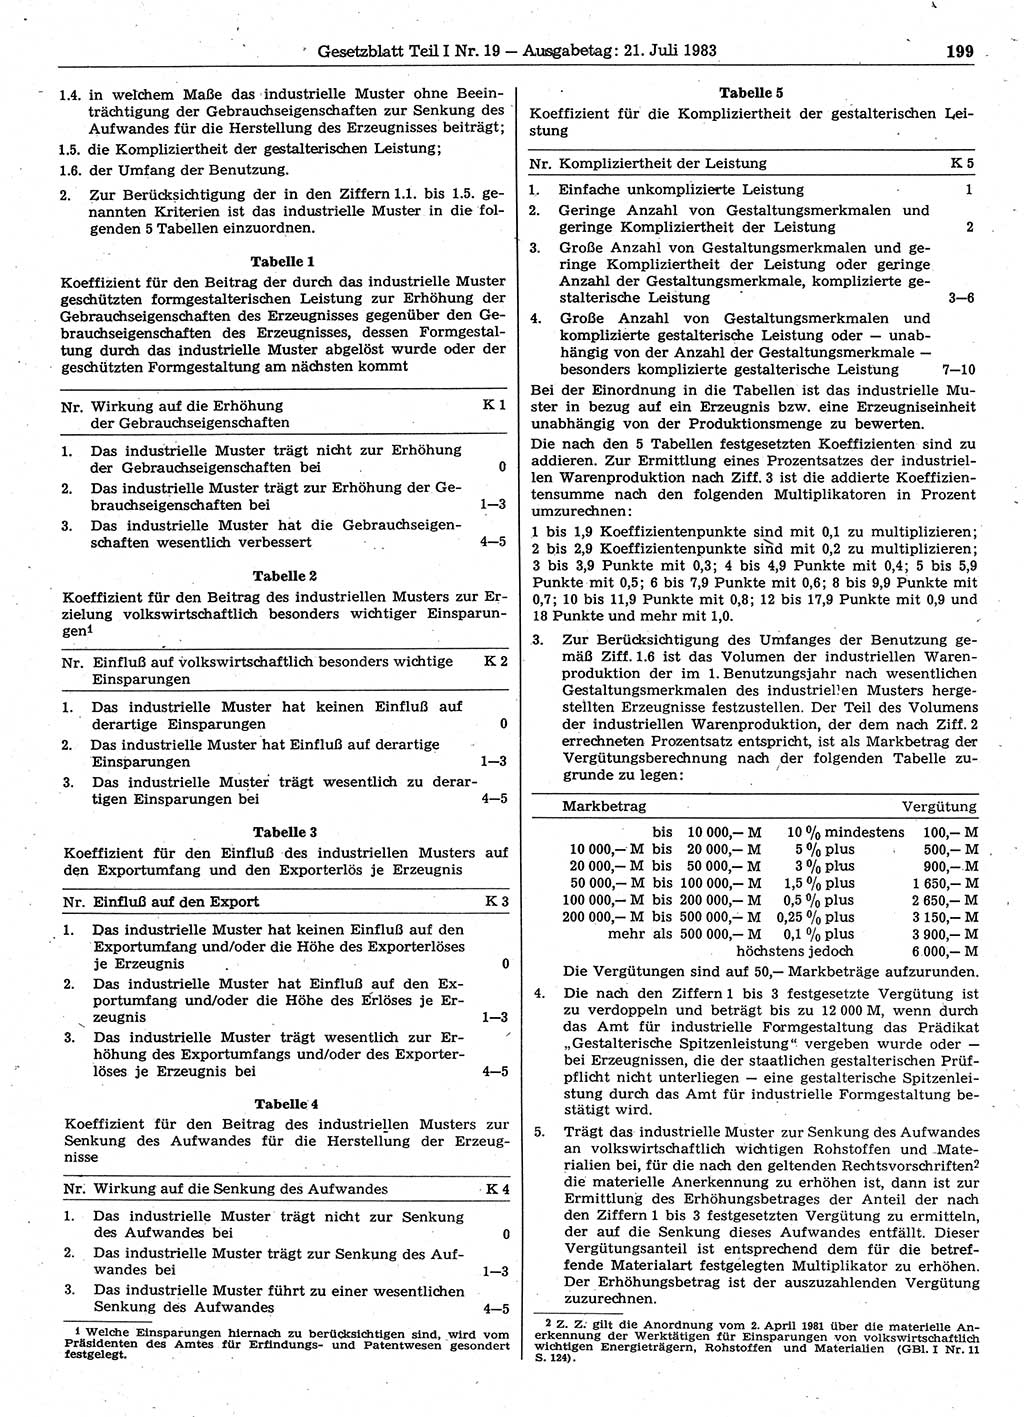 Gesetzblatt (GBl.) der Deutschen Demokratischen Republik (DDR) Teil Ⅰ 1983, Seite 199 (GBl. DDR Ⅰ 1983, S. 199)